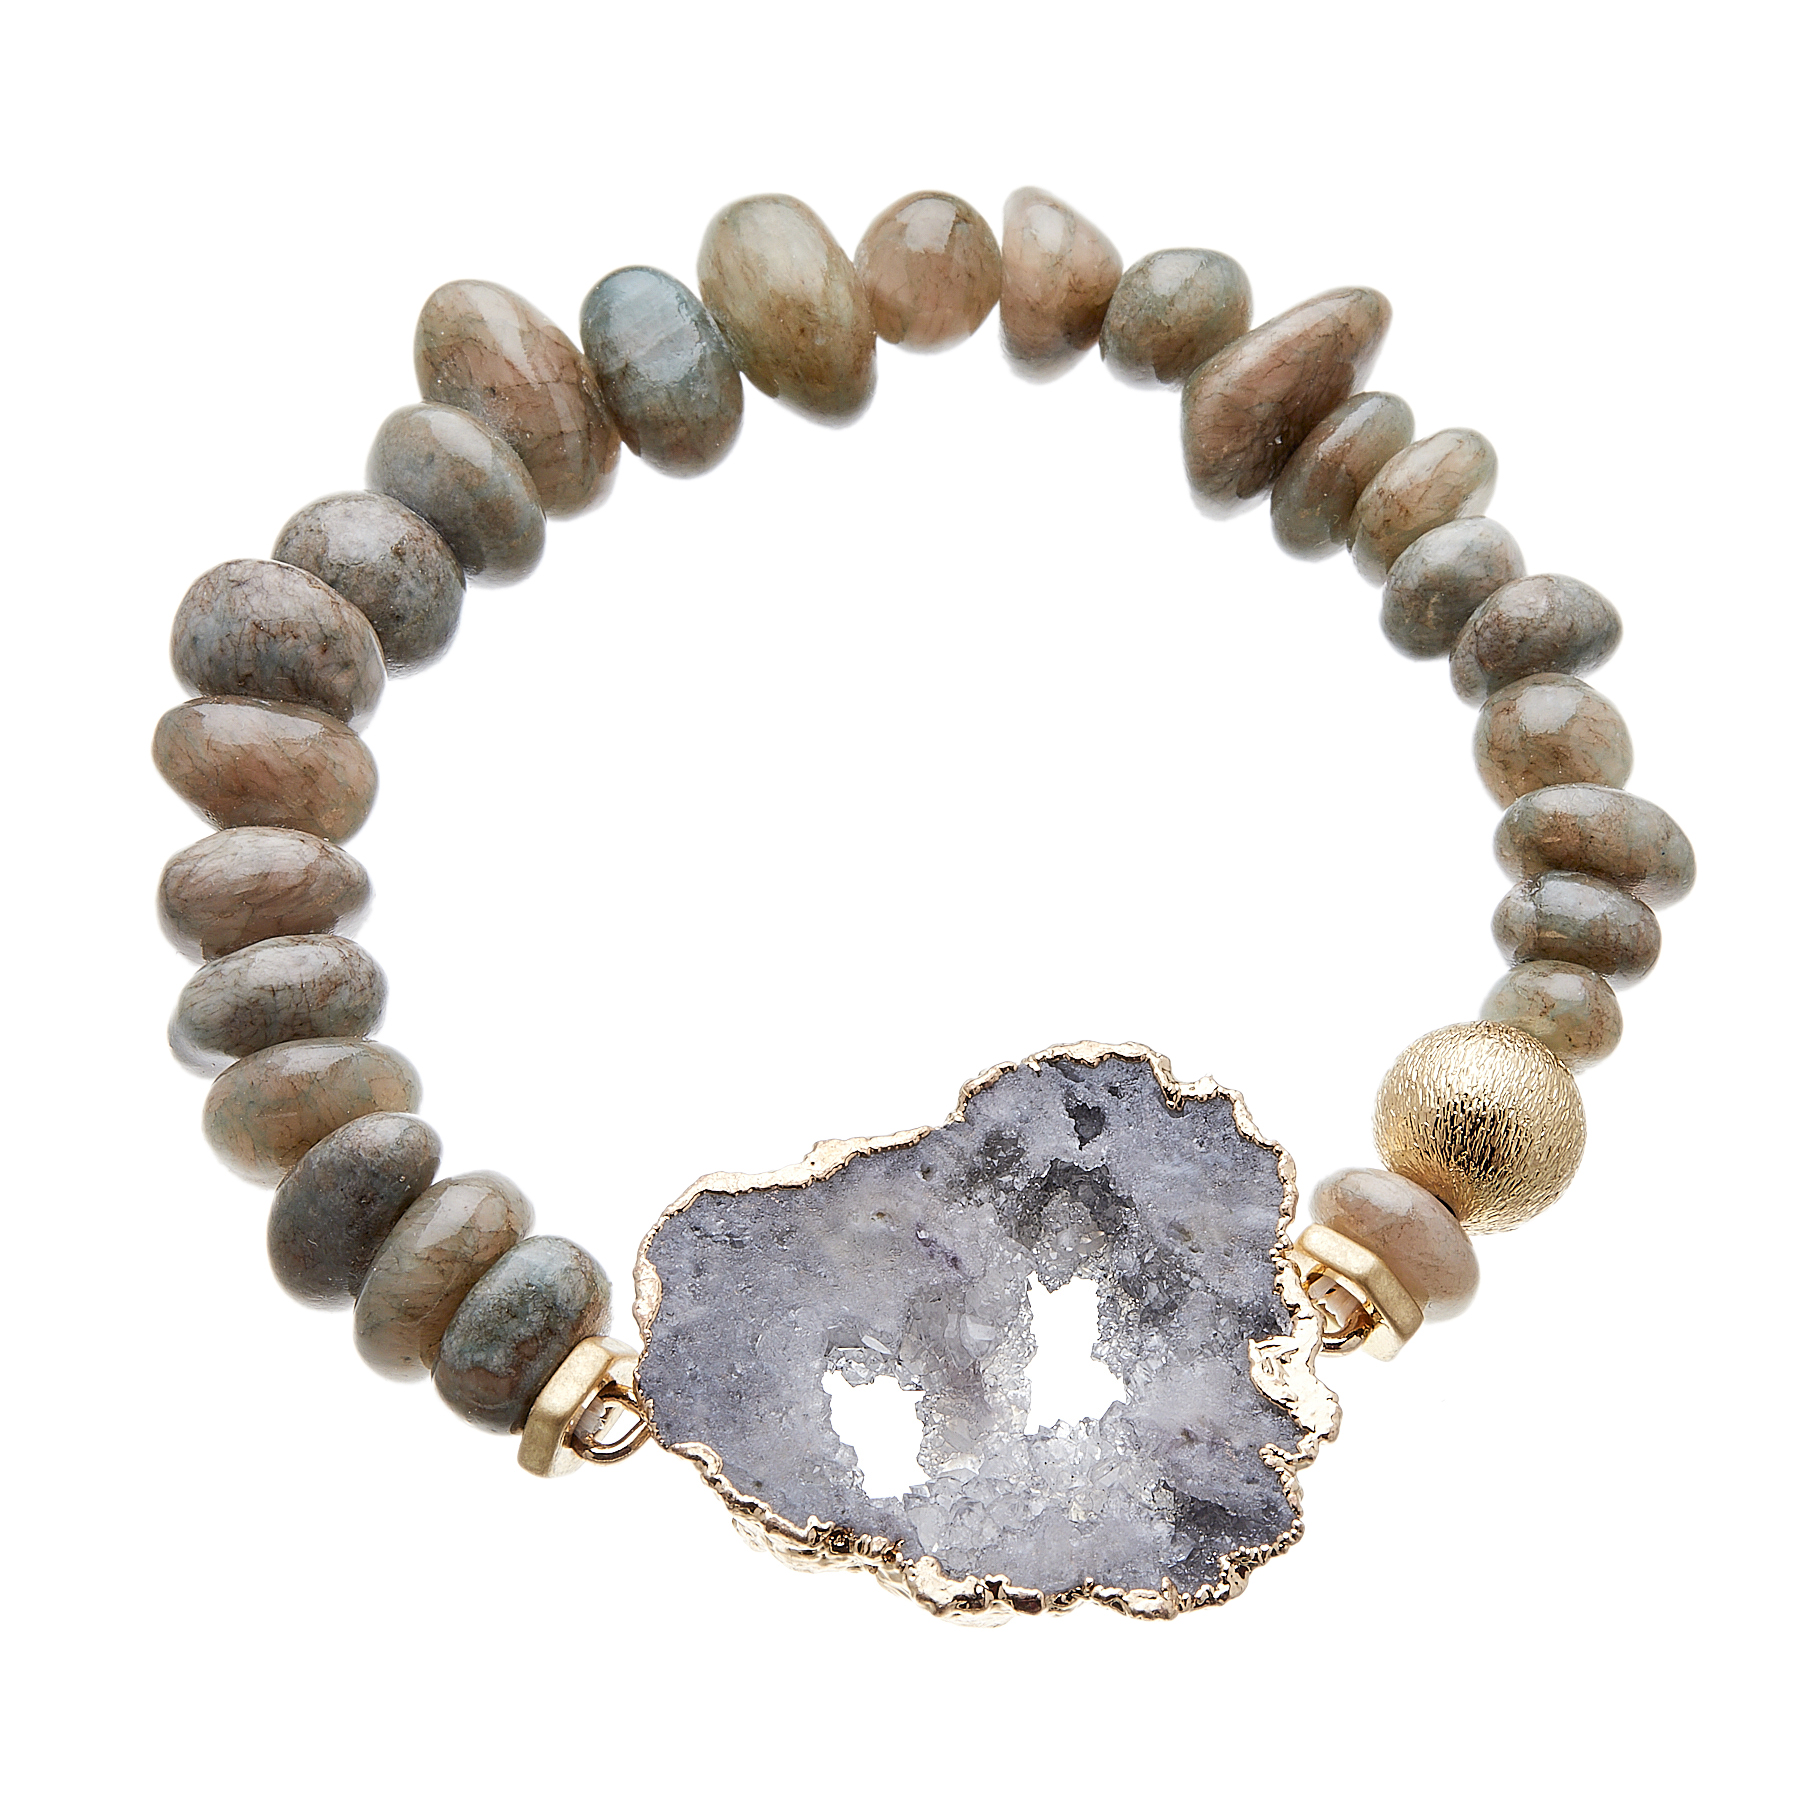 Bracelet with grey agate beads and grey druzy quartz stone - Jacey